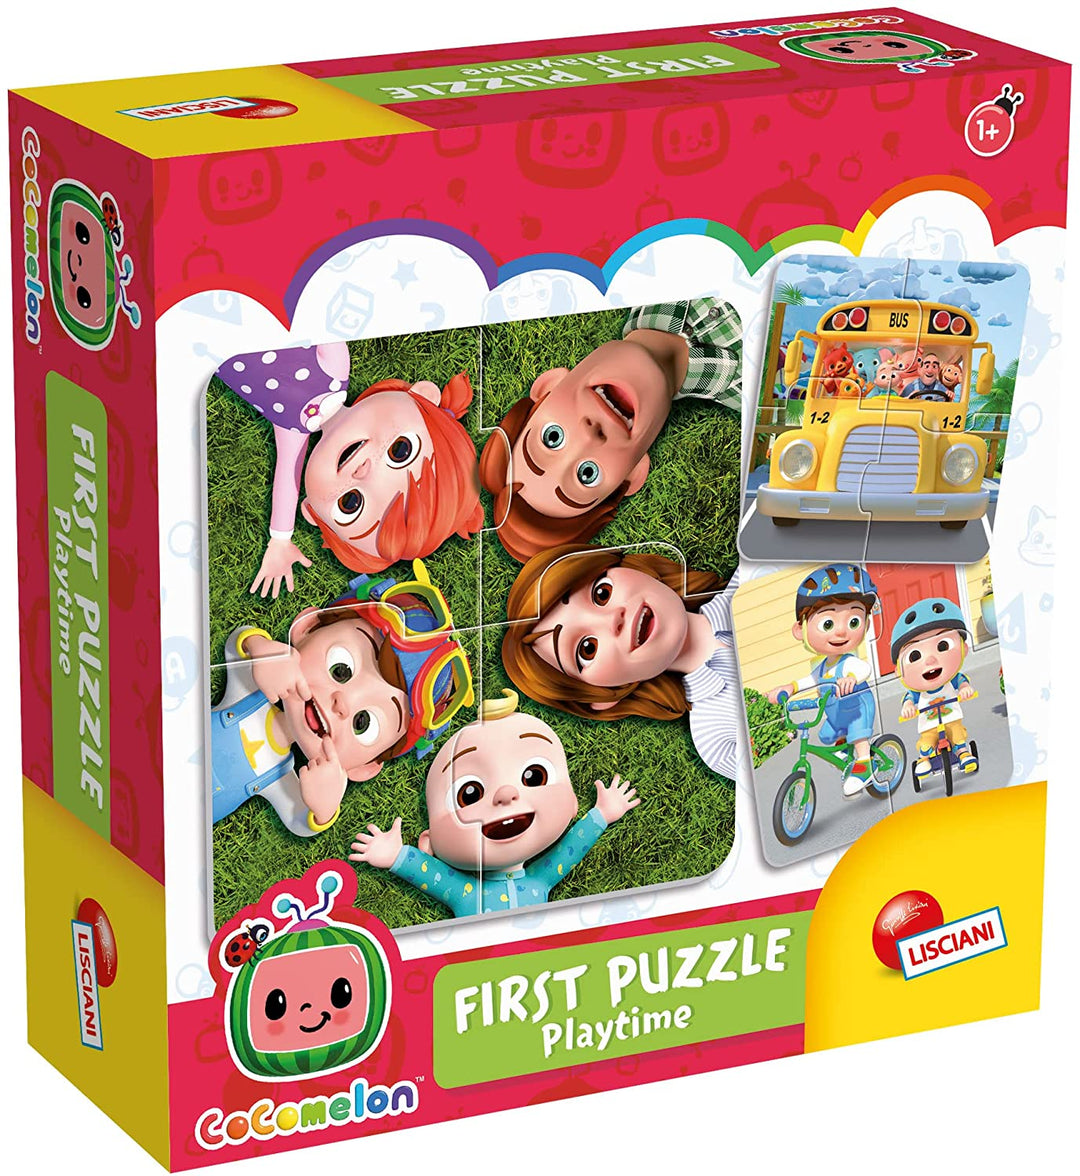 Lisciani Giochi 90877 Puzzles, Multicolored